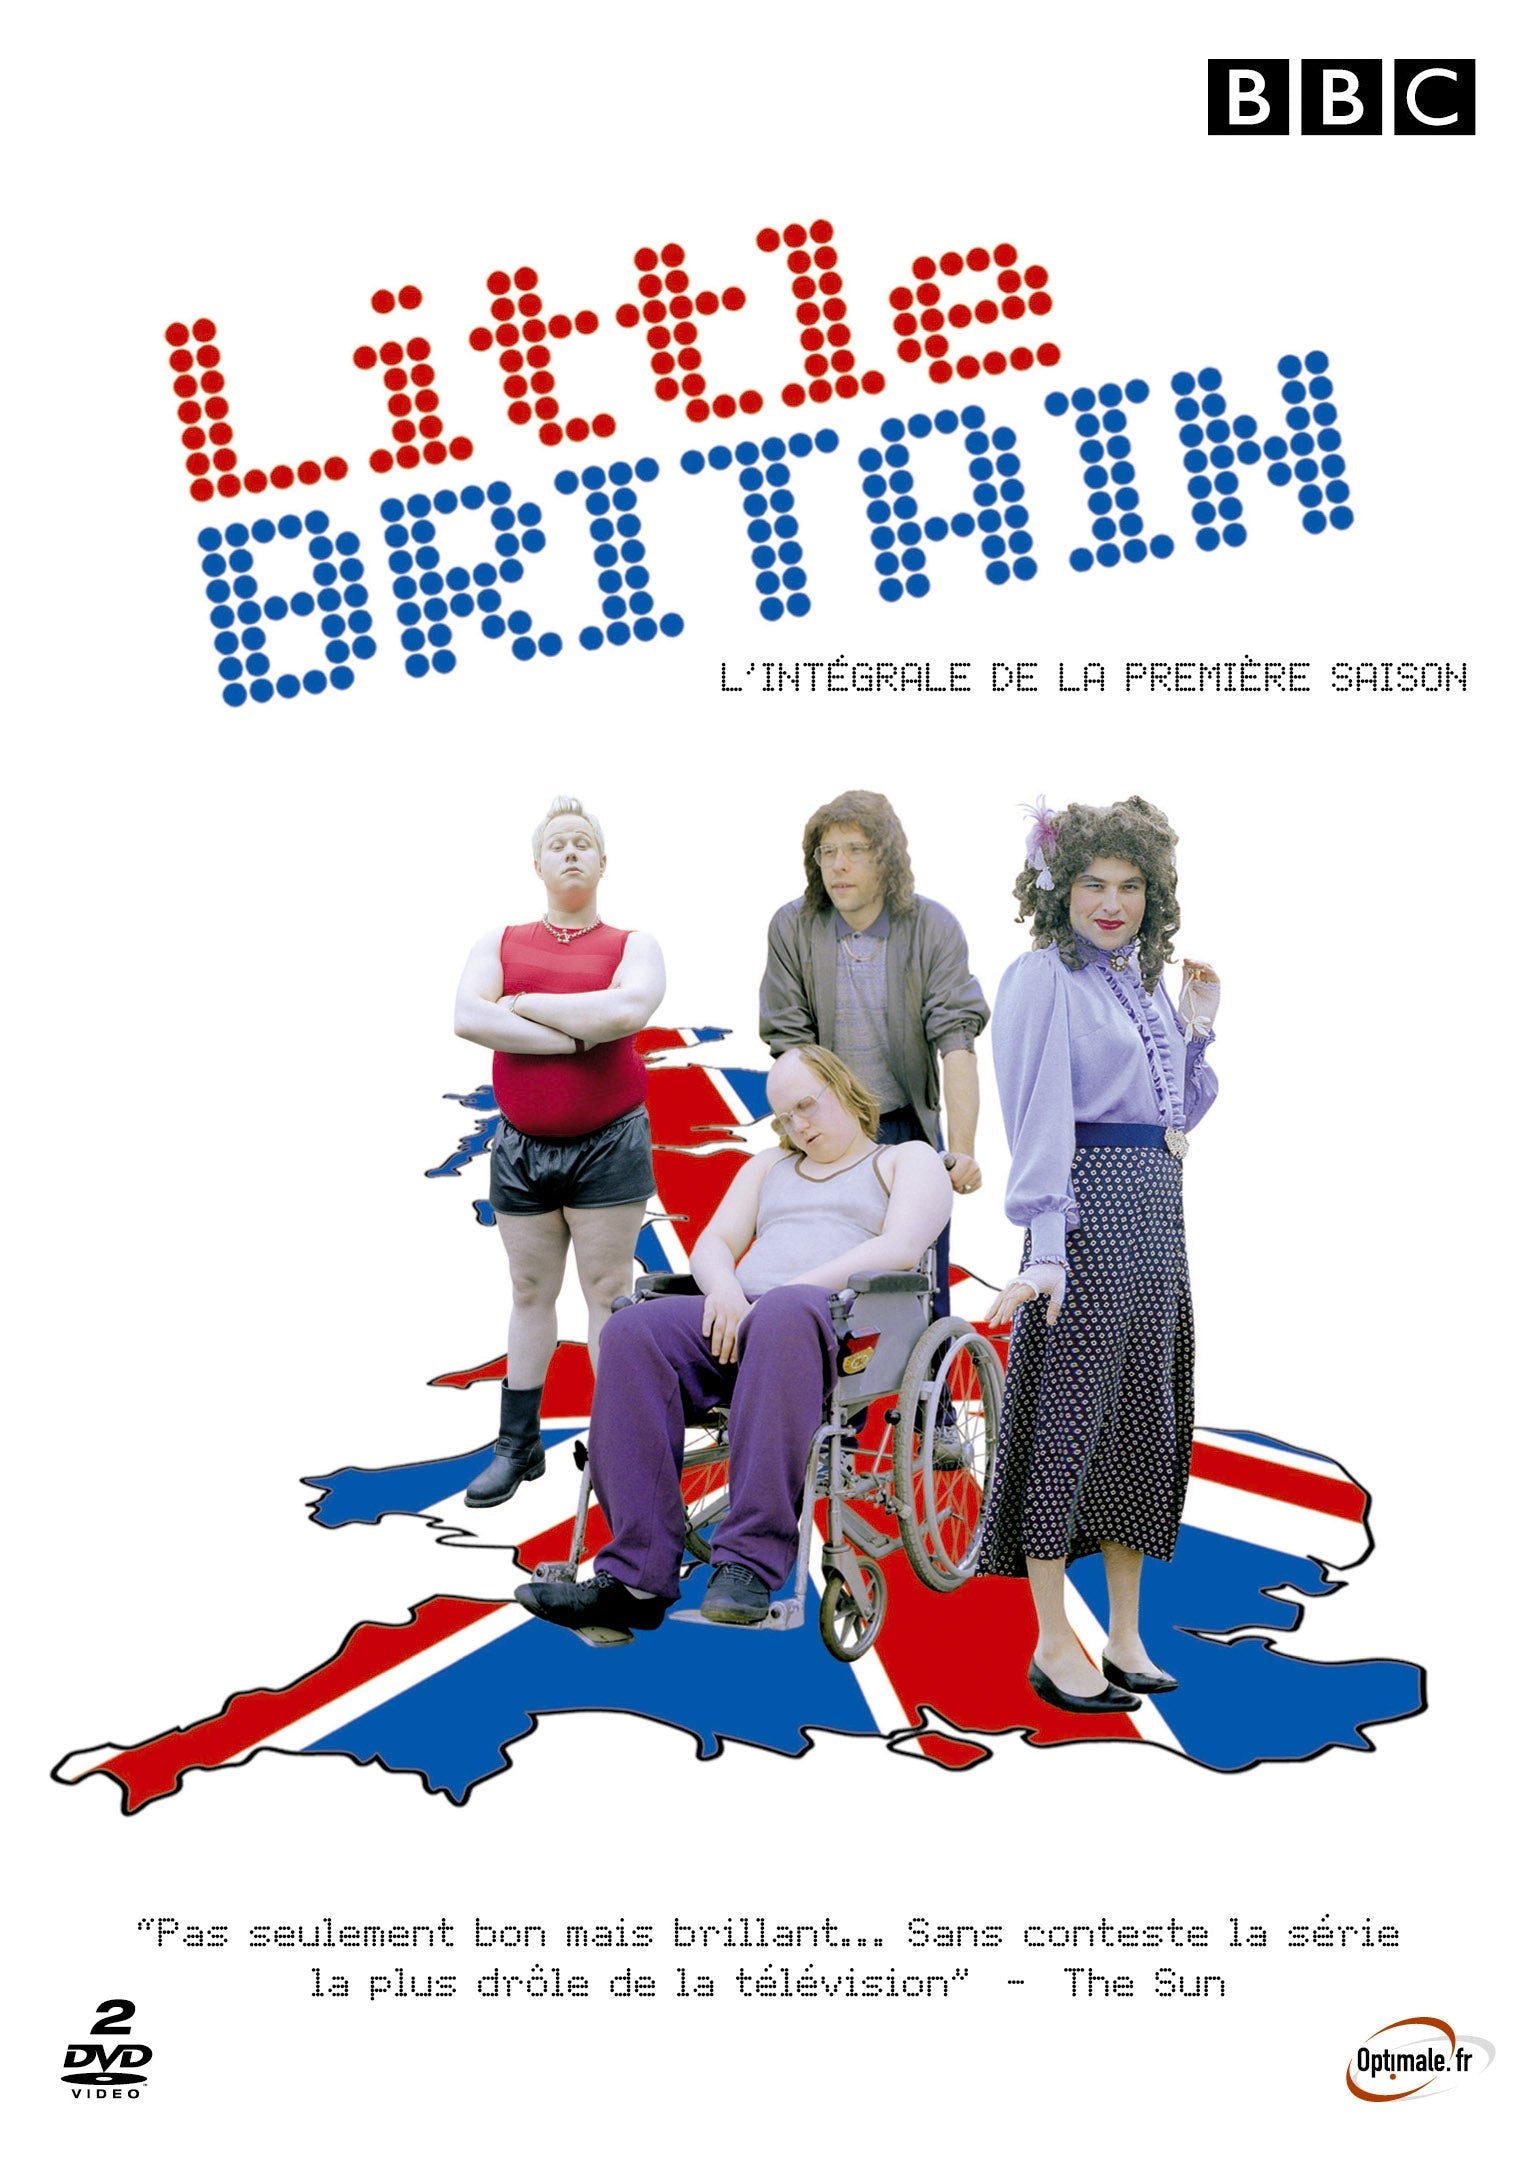 Little Britain - Saison 1 clicktofournisseur.com